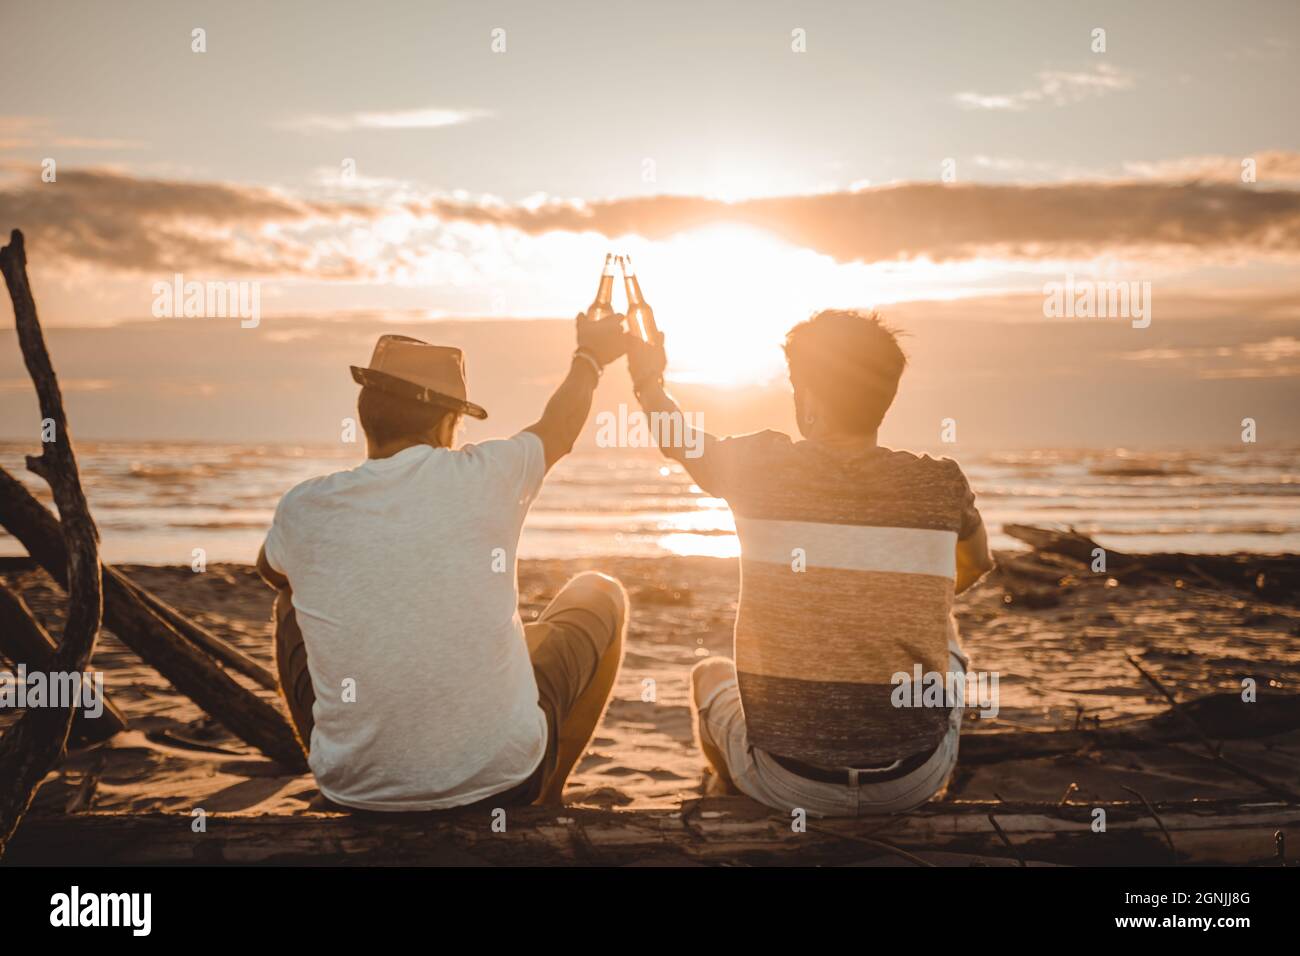 Deux jeunes amis passent du temps ensemble assis sur la plage, buvant de la bière et dorlotant en vacances au crépuscule au coucher du soleil. Concept d'amitié Banque D'Images